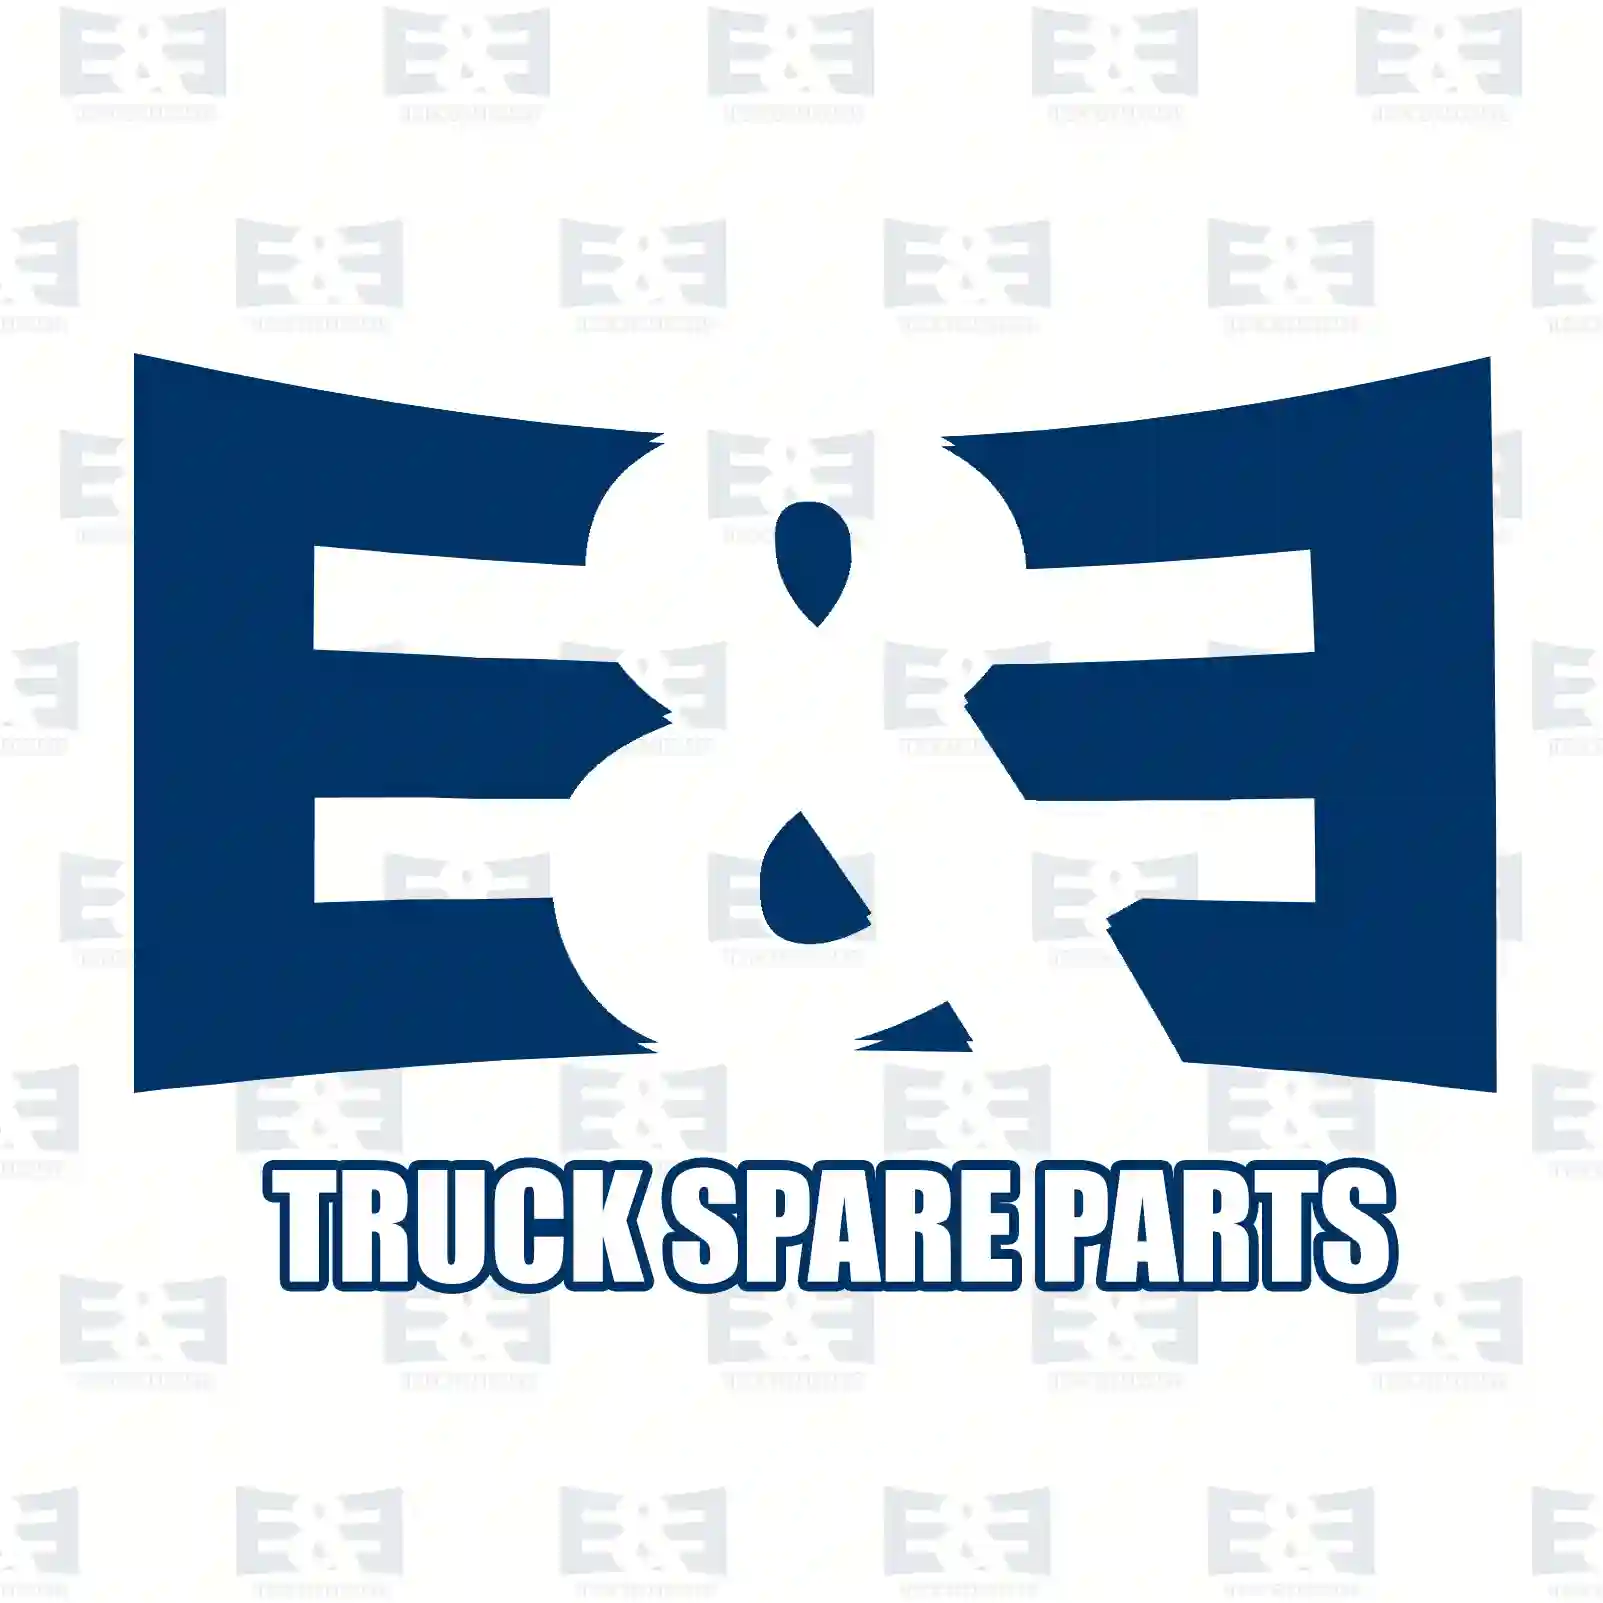 Screw, 2E2285960, 0000005543, 000000005543, 910105016013, , , ||  2E2285960 E&E Truck Spare Parts | Truck Spare Parts, Auotomotive Spare Parts Screw, 2E2285960, 0000005543, 000000005543, 910105016013, , , ||  2E2285960 E&E Truck Spare Parts | Truck Spare Parts, Auotomotive Spare Parts